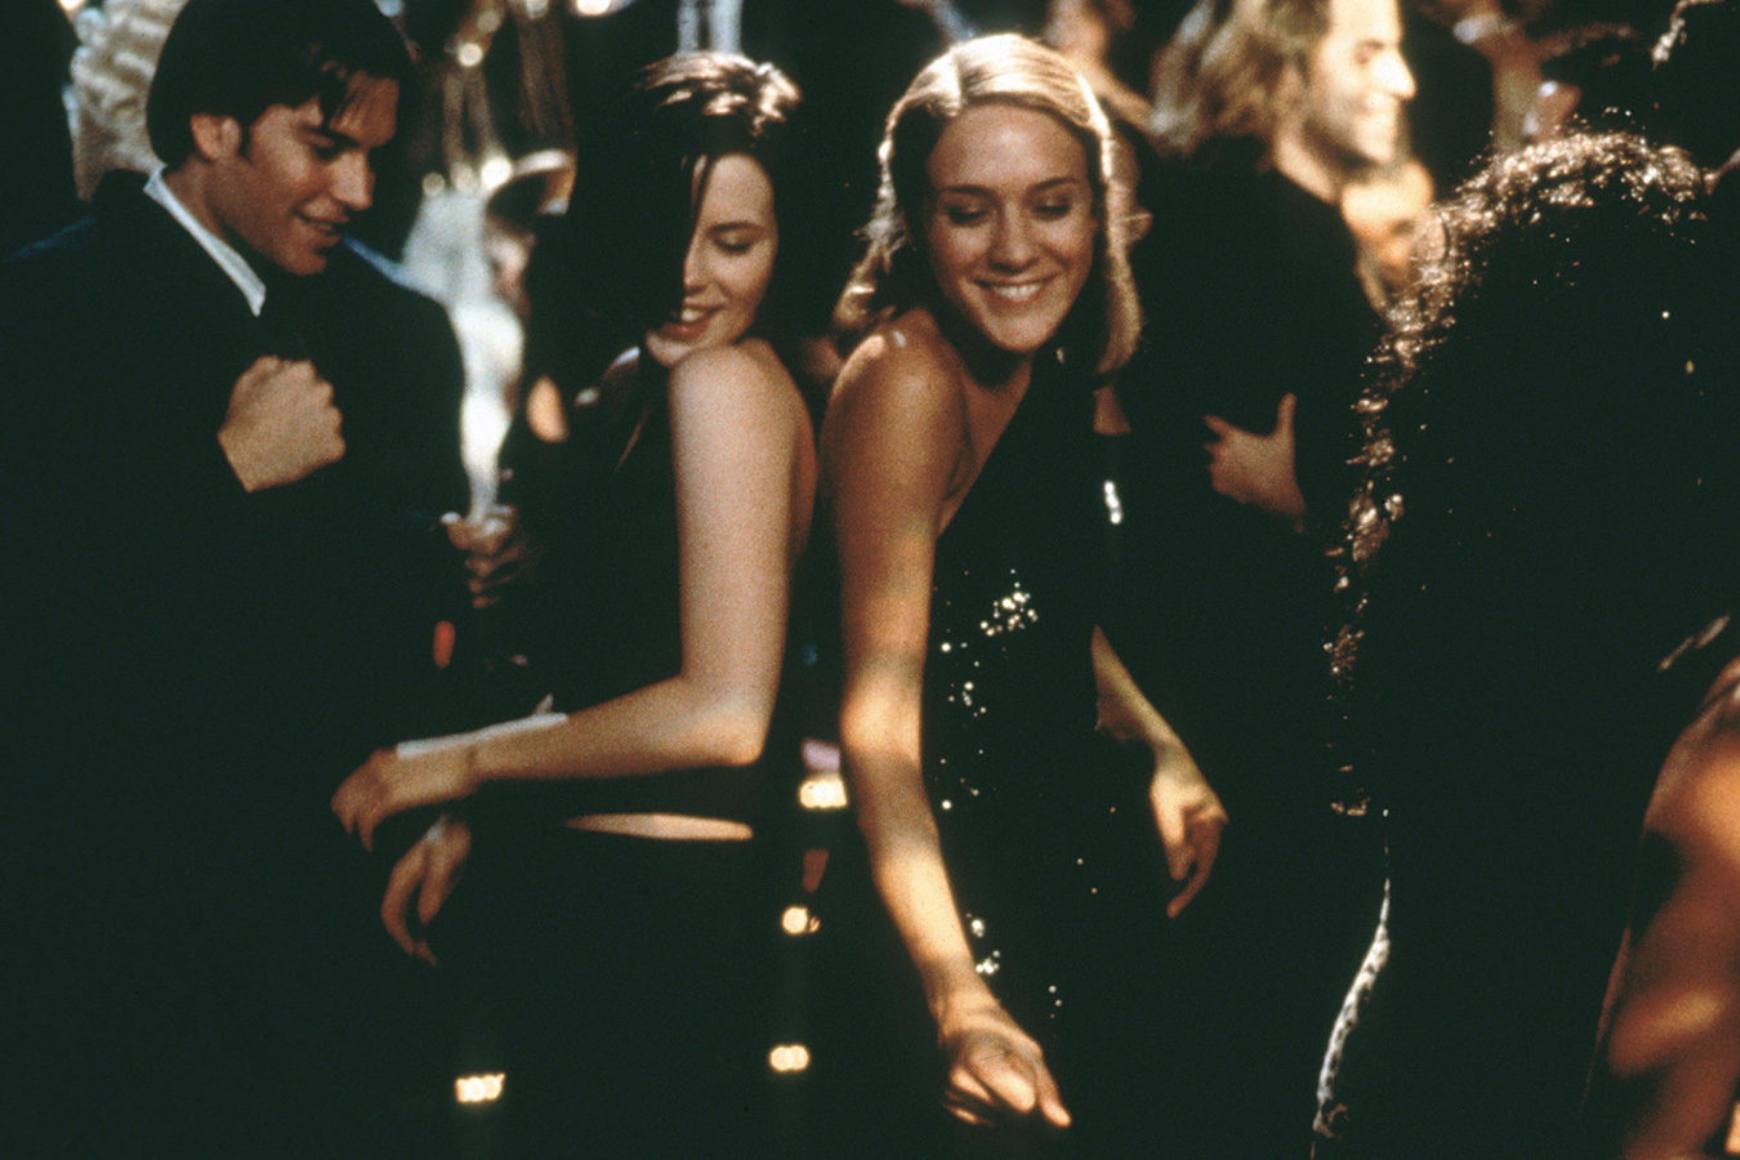 Kate Beckinsale et Chloë Sevigny sourient et dansent en robes noires dans une salle bondée.